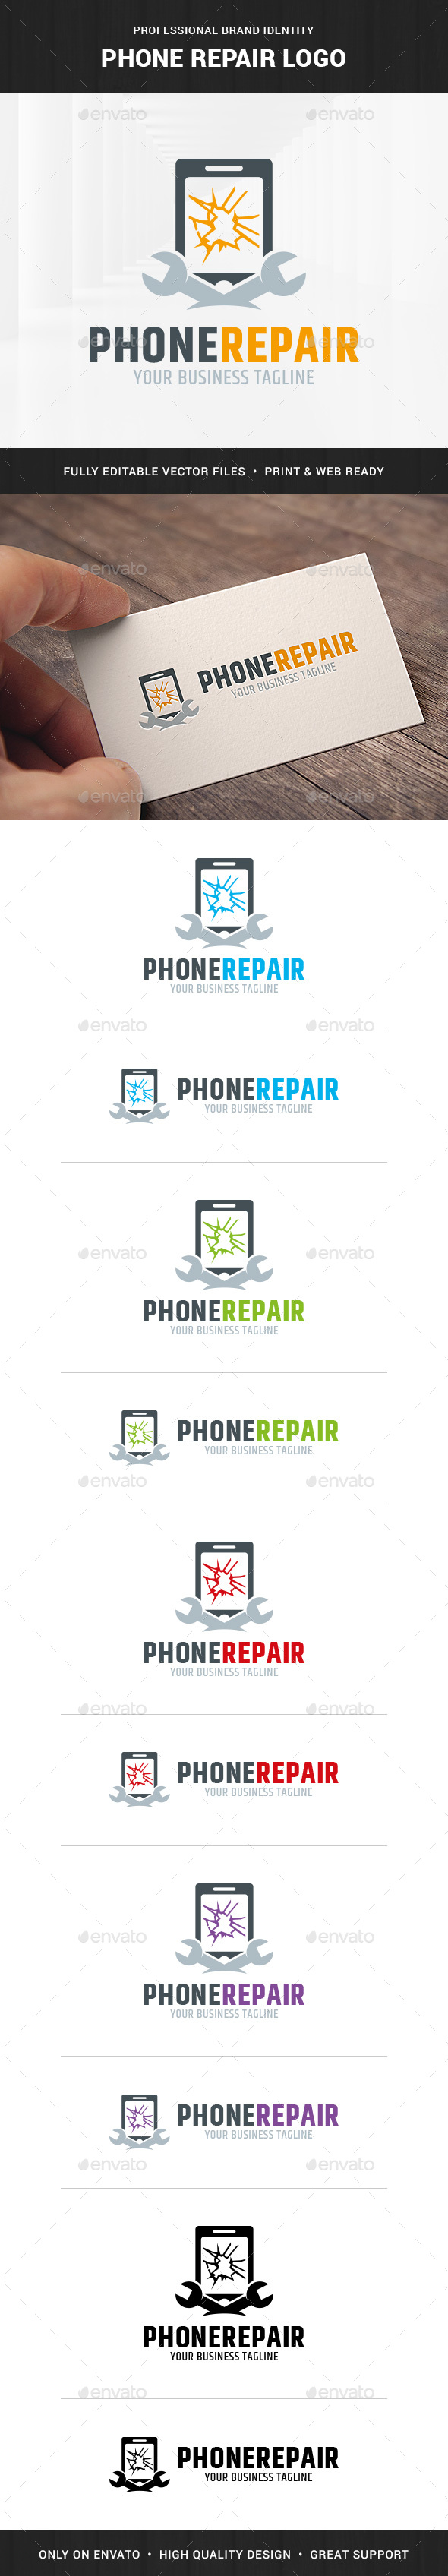 Phone Repair Service Logo Template